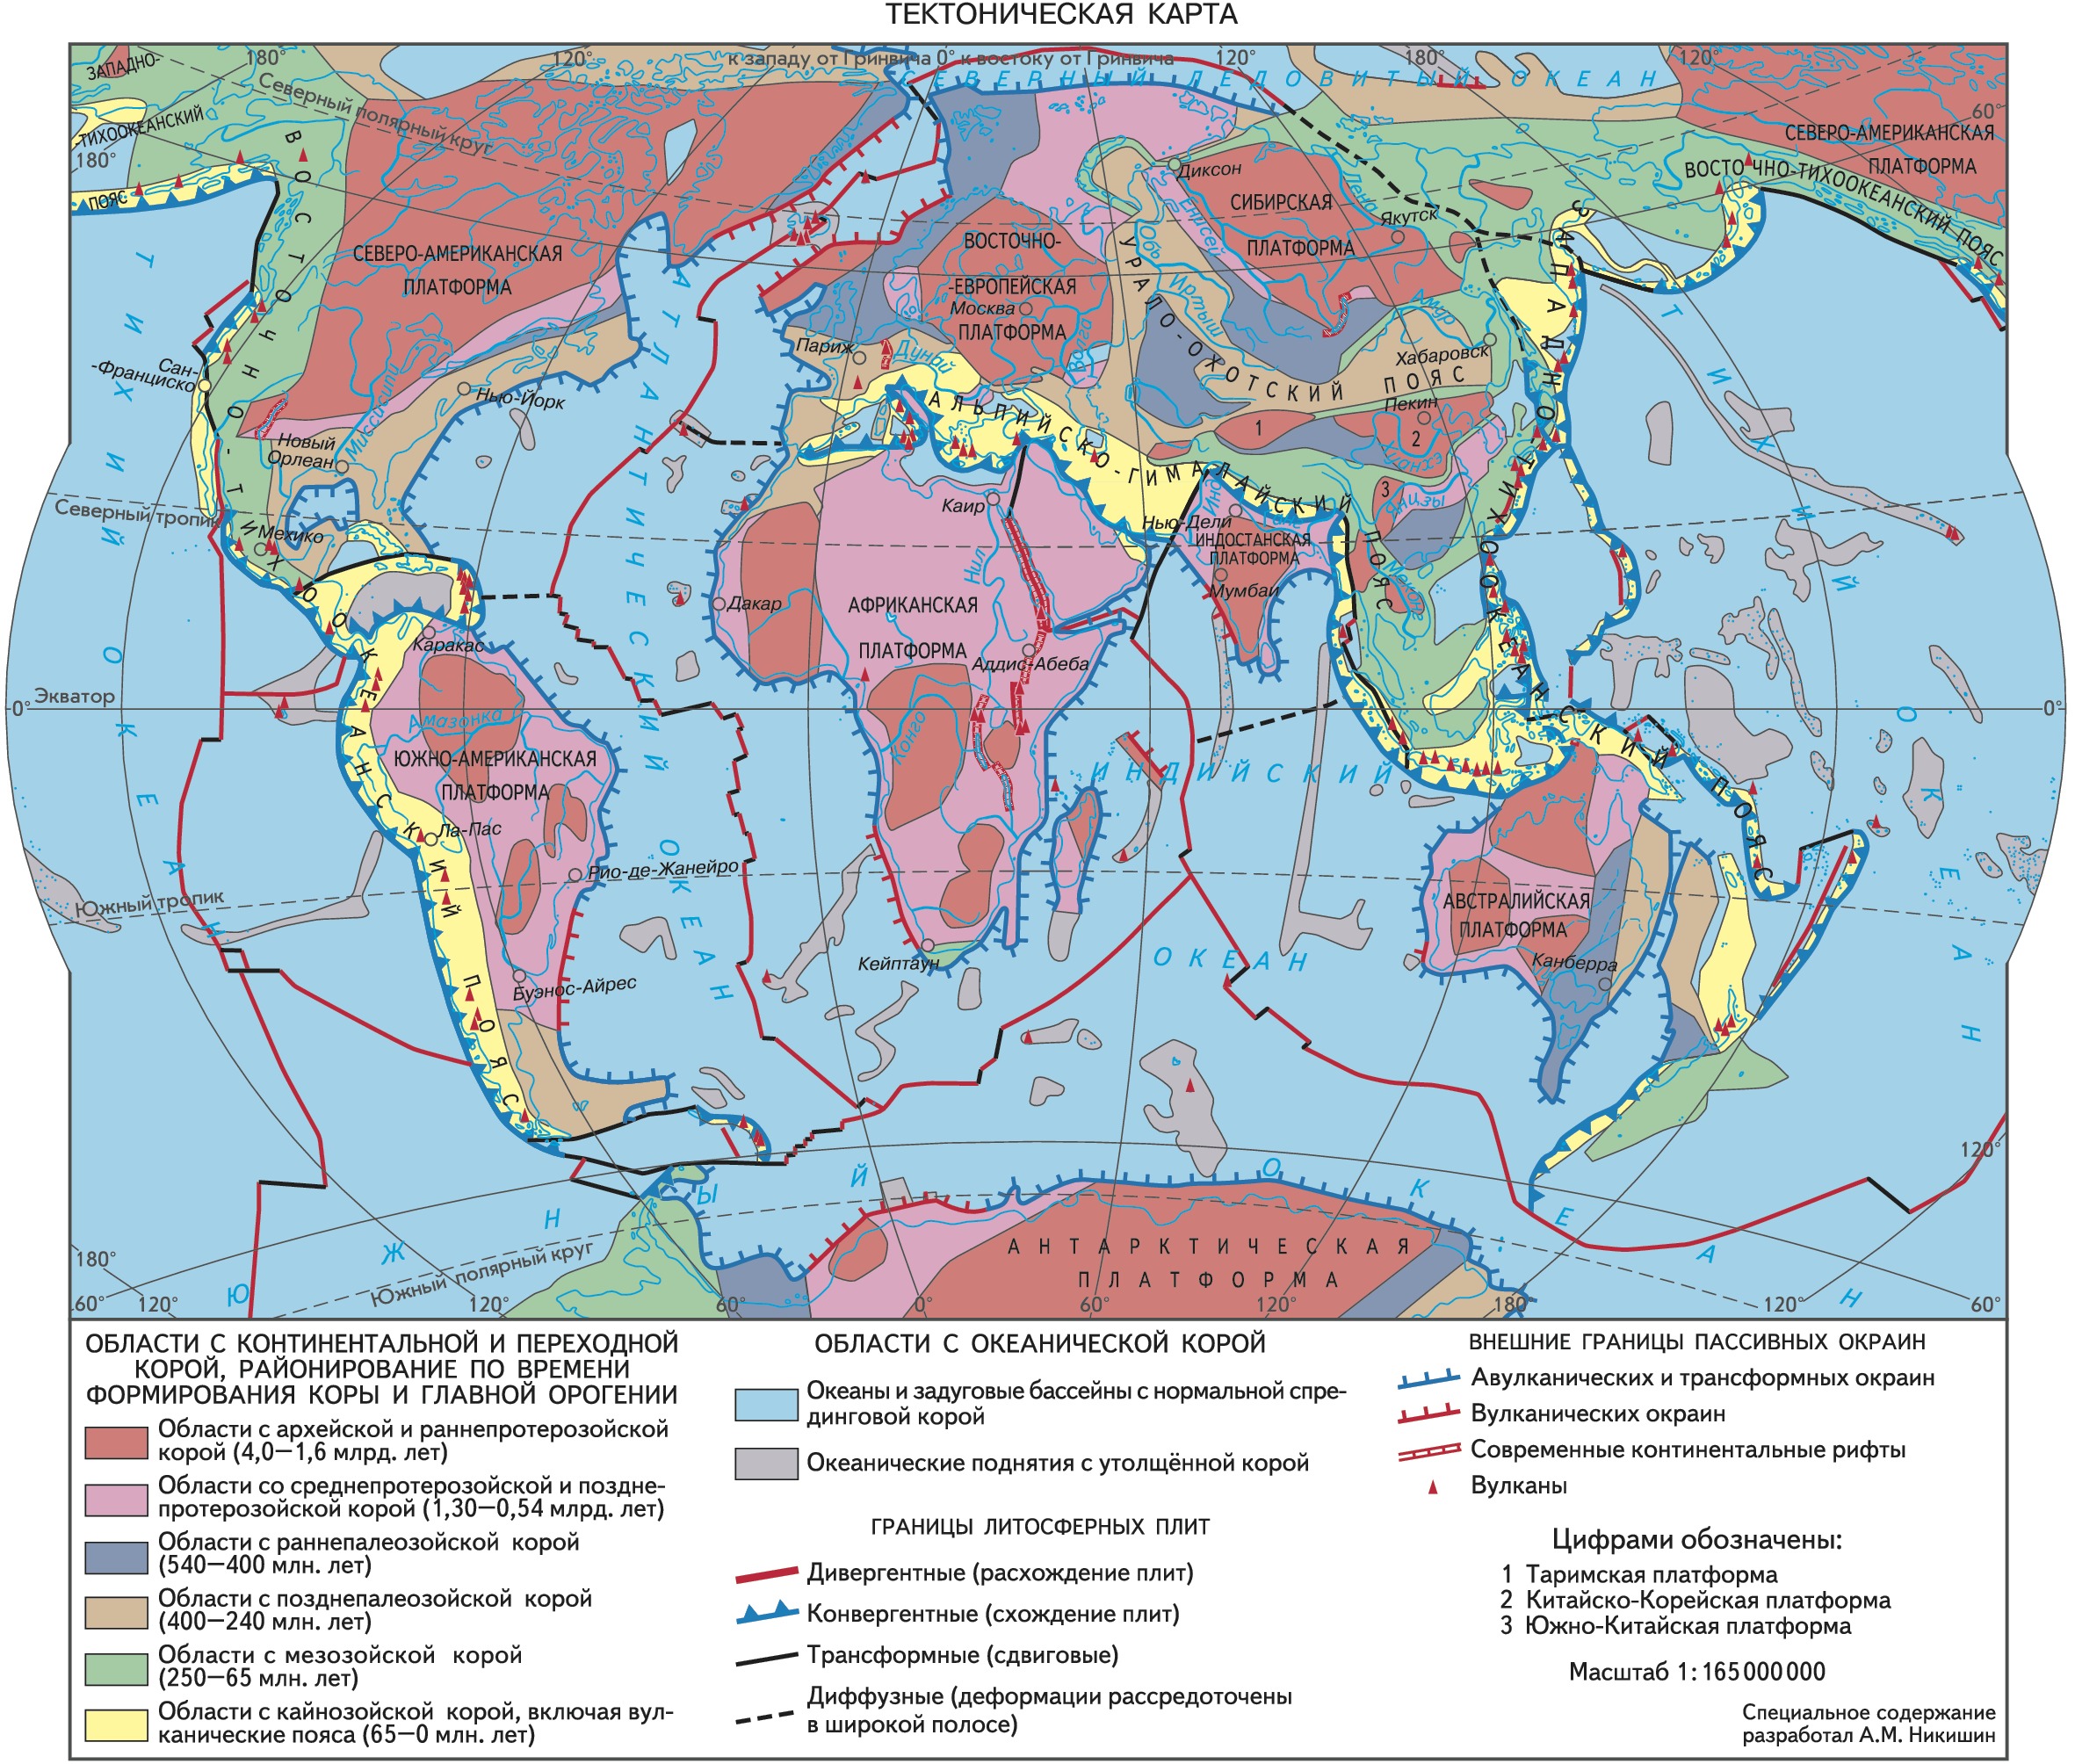 Складчатость южной сибири. Карта тектоническая тектоническая.